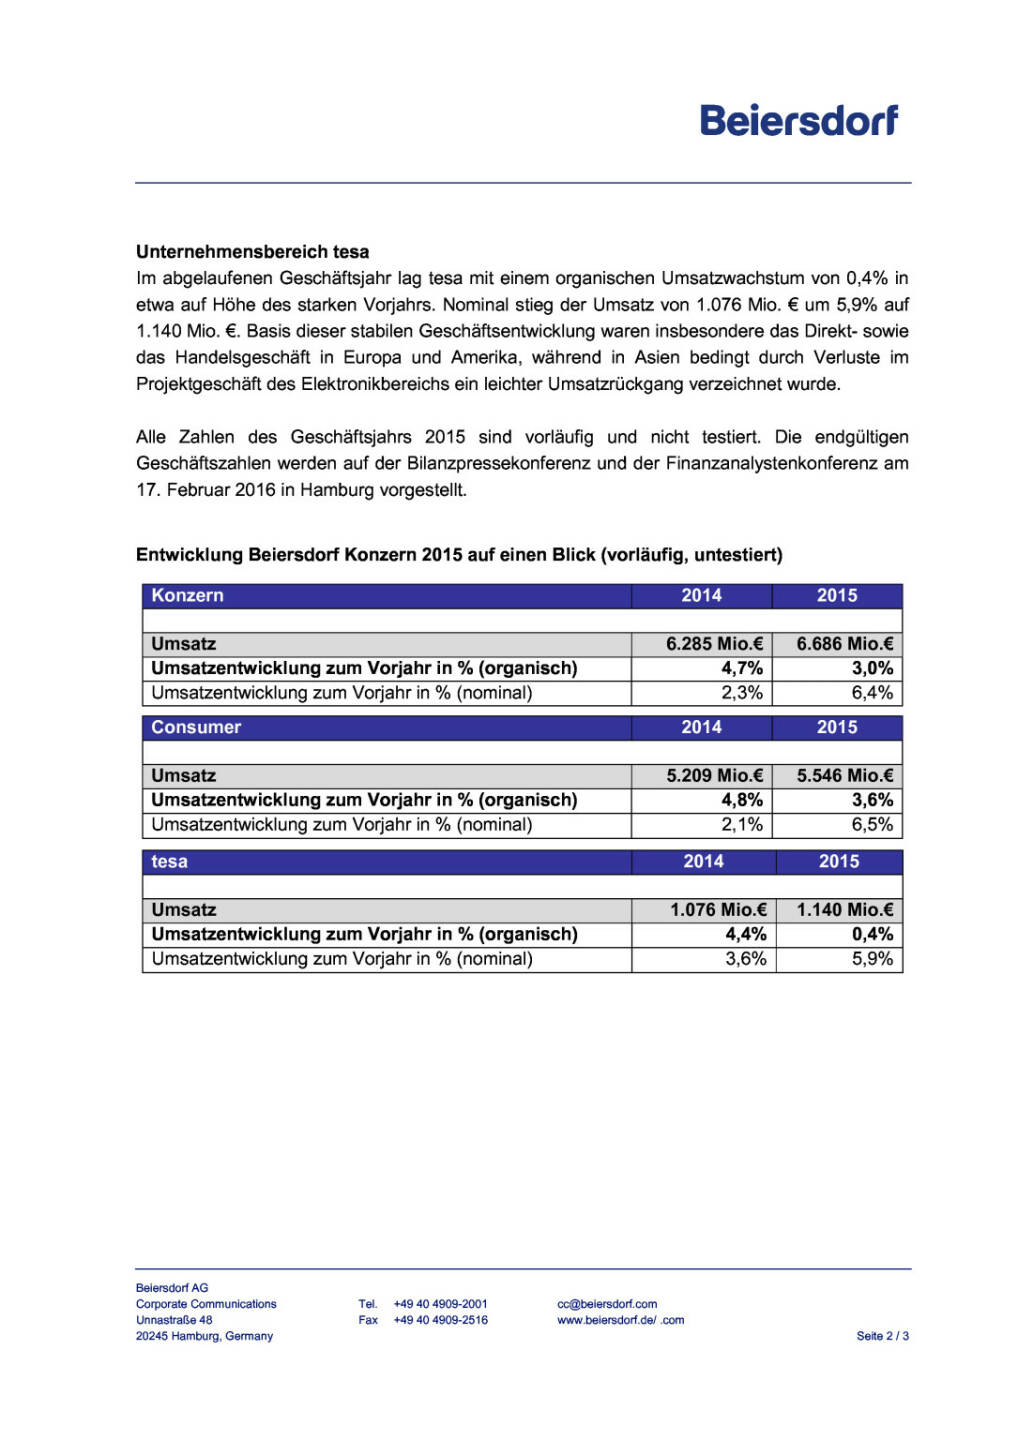 Beiersdorf: vorläufige Umsatzzahlen 2015, Seite 2/3, komplettes Dokument unter http://boerse-social.com/static/uploads/file_550_beiersdorf_vorlaufige_umsatzzahlen_2015.pdf